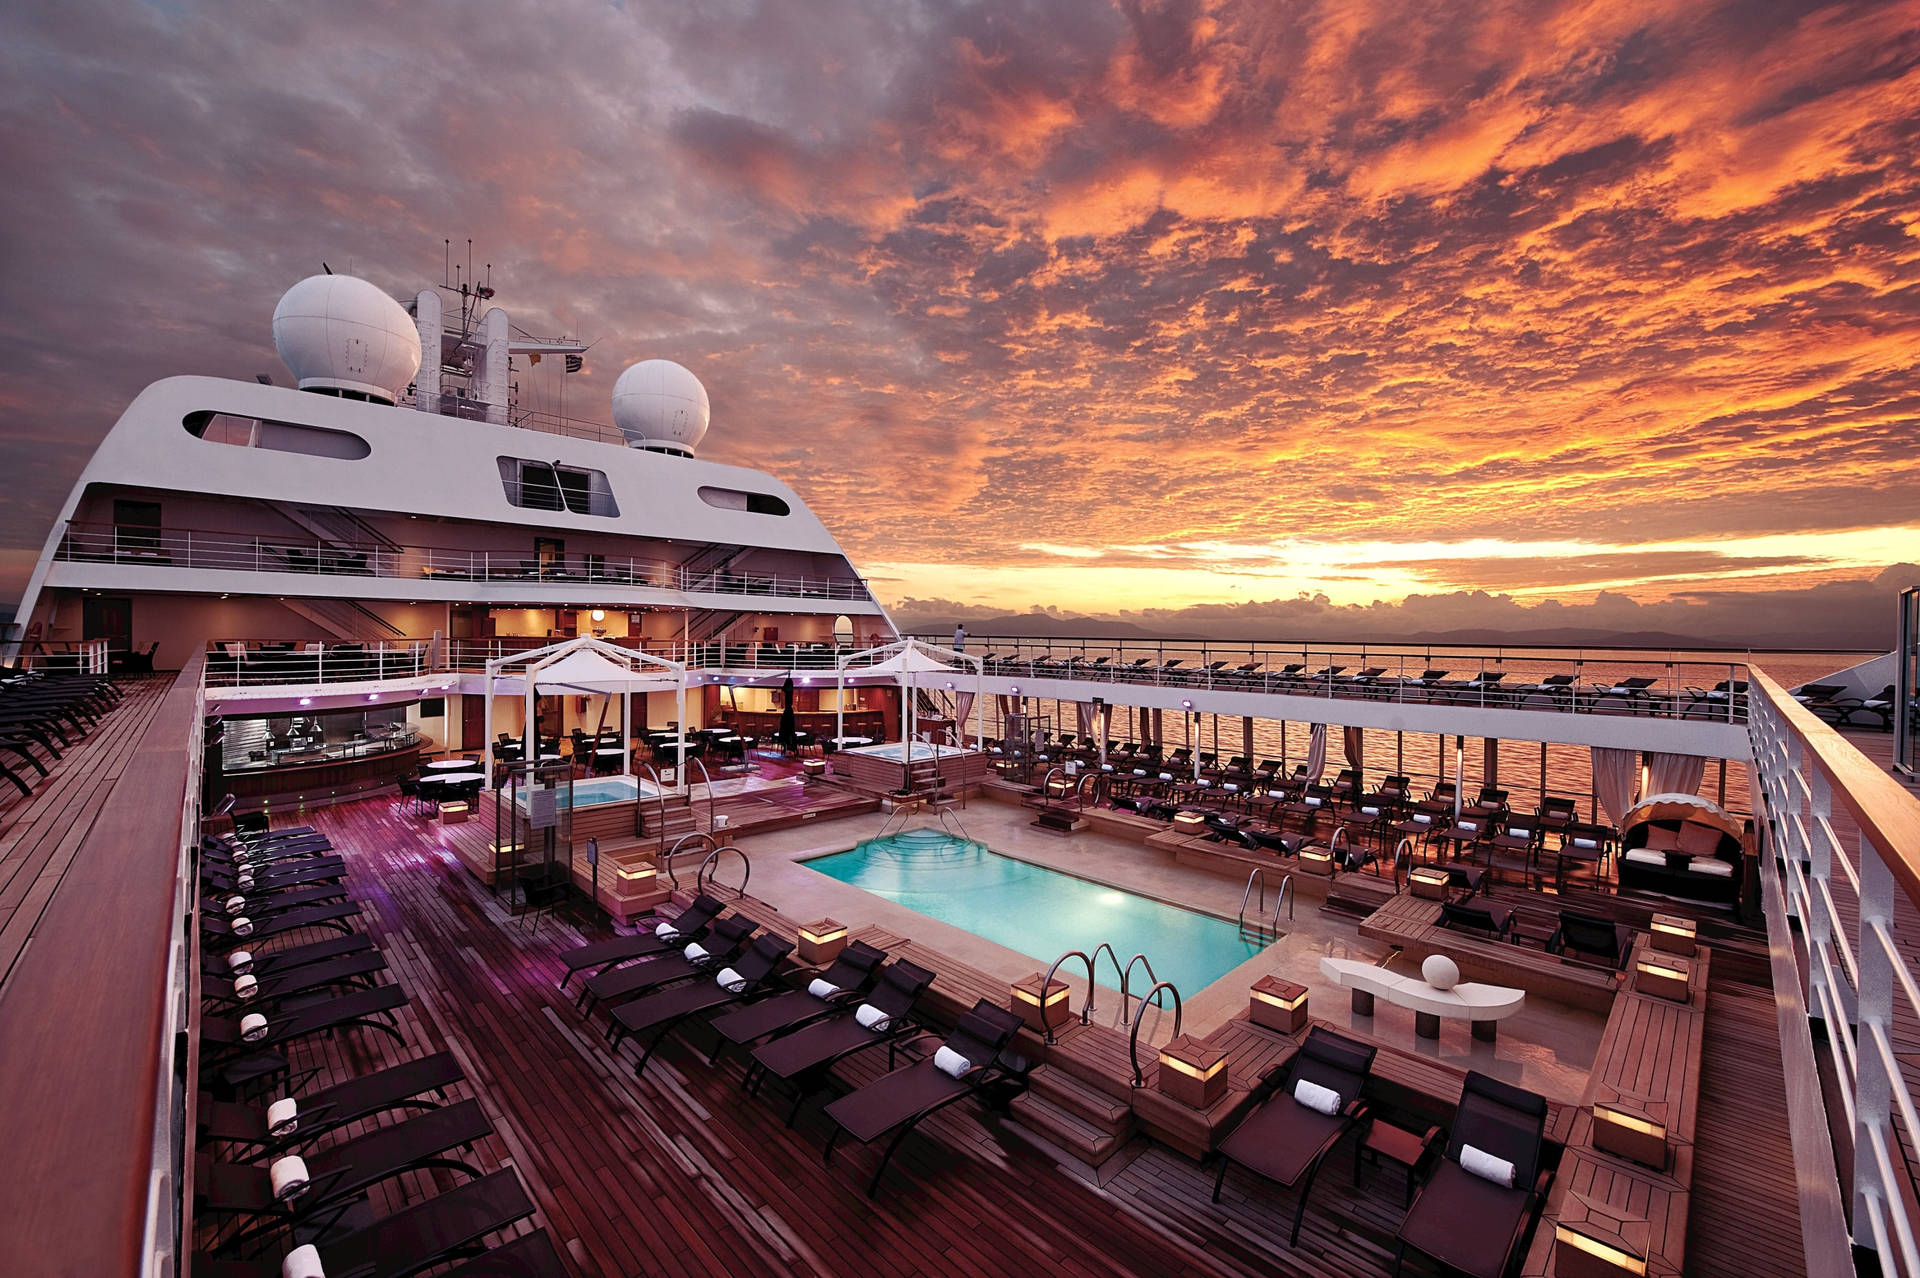 Aesthetic Cruise Ship Sunset